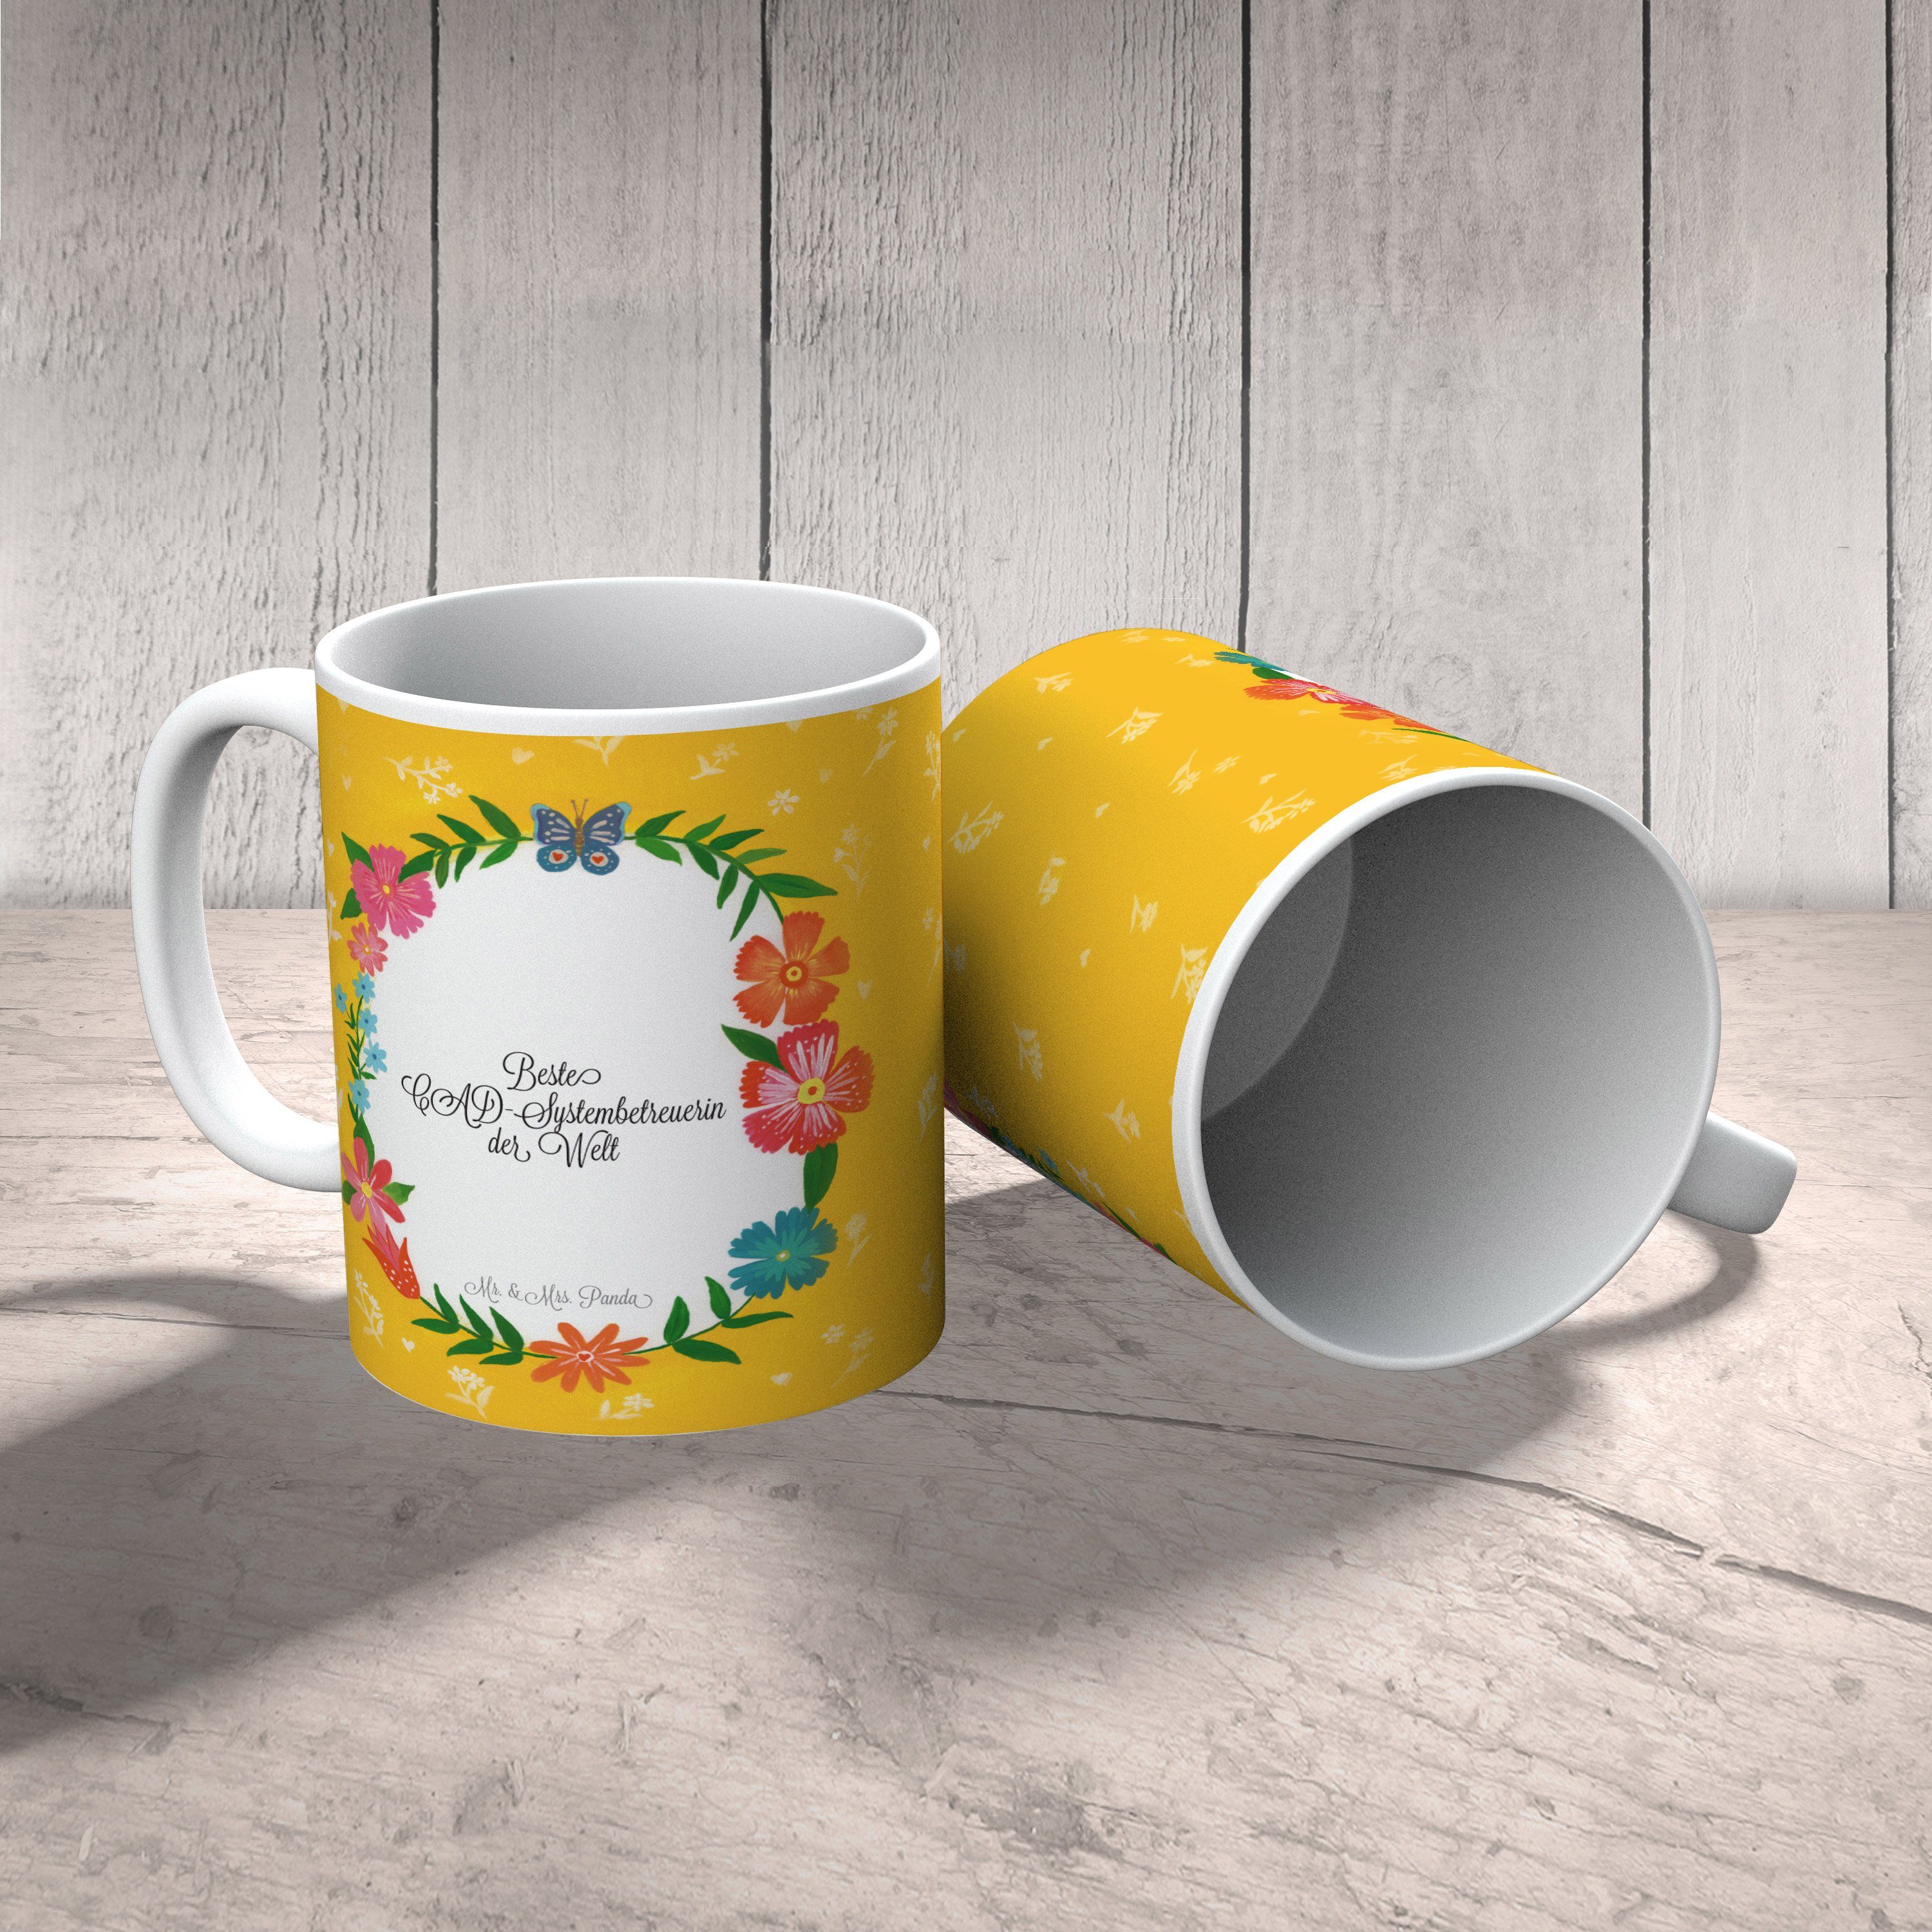 Mr. & Mrs. Panda Tasse Keramik Geschenk, CAD-Systembetreuerin - Bür, Abschied, Geschenk Tasse, Rente